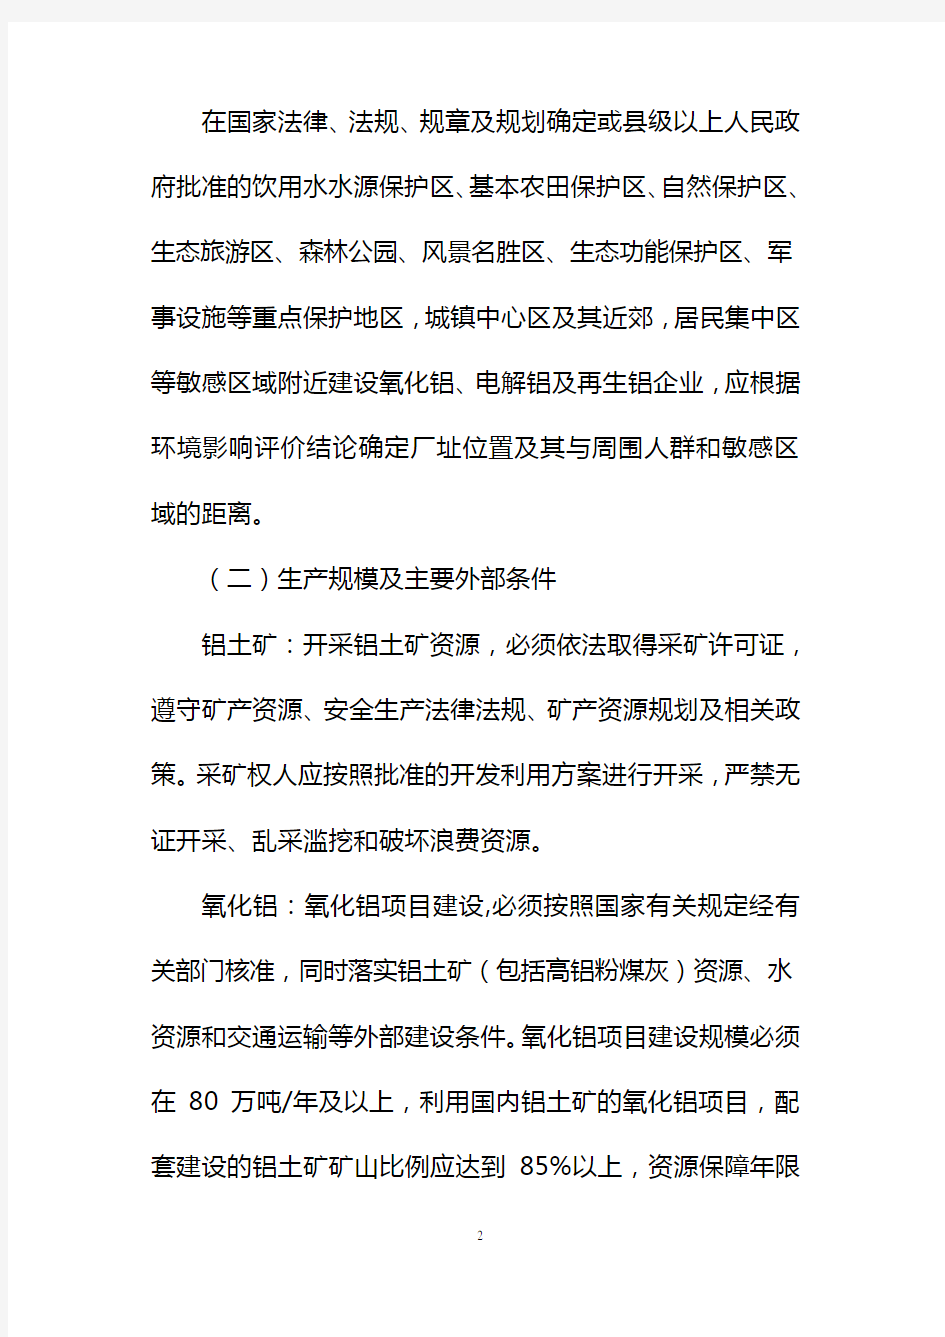 铝行业准入条件-中华人民共和国工业和信息化部